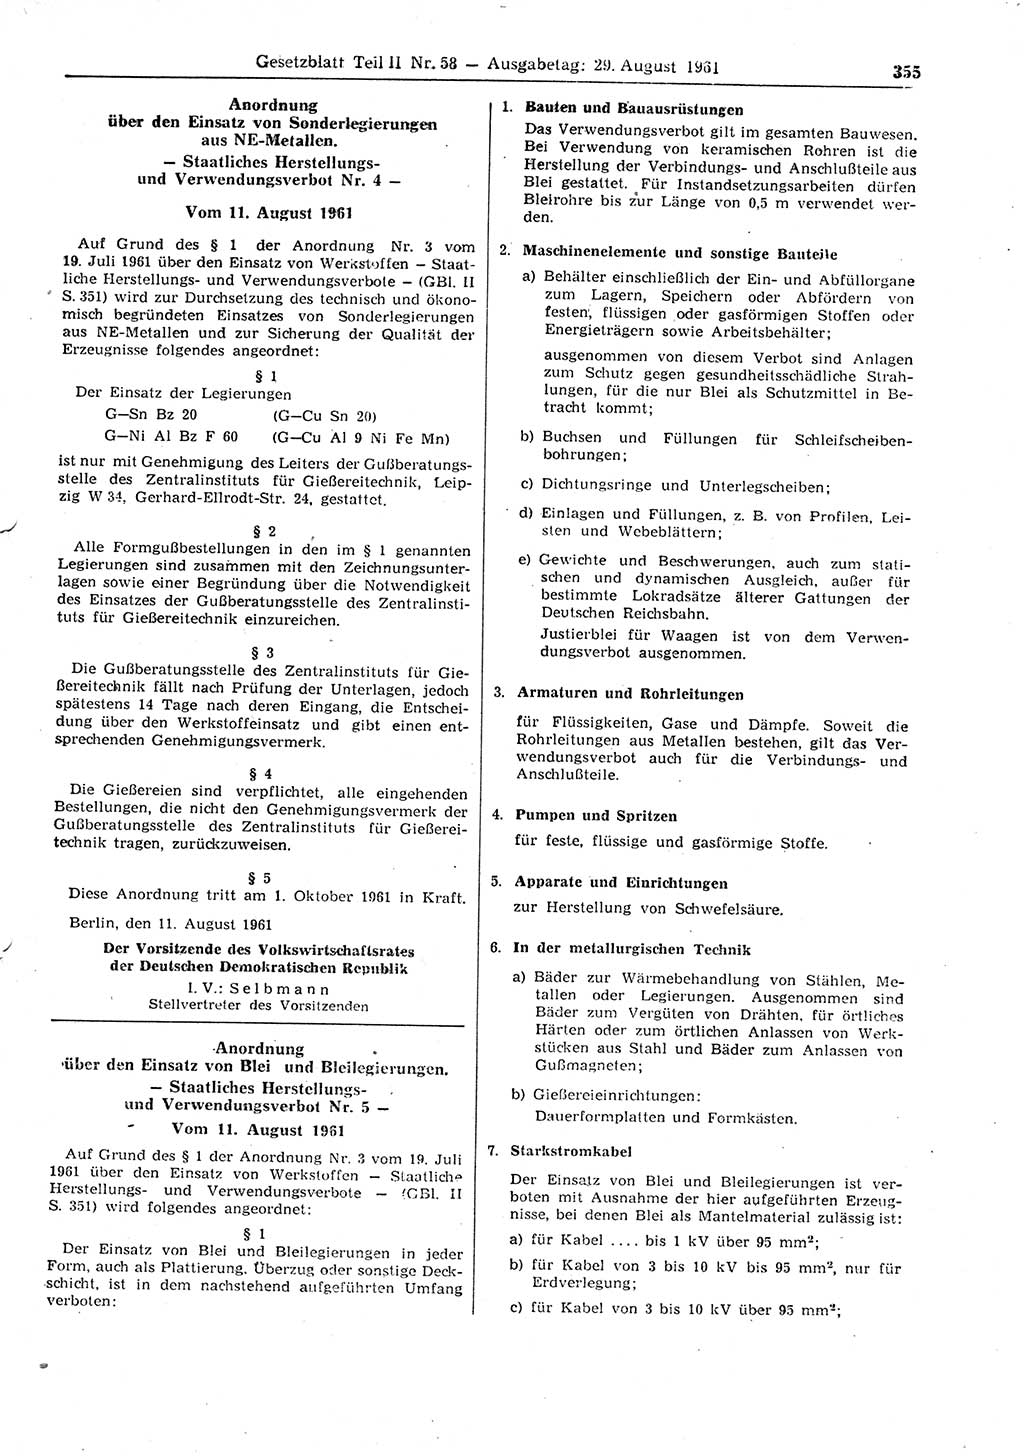 Gesetzblatt (GBl.) der Deutschen Demokratischen Republik (DDR) Teil ⅠⅠ 1961, Seite 355 (GBl. DDR ⅠⅠ 1961, S. 355)